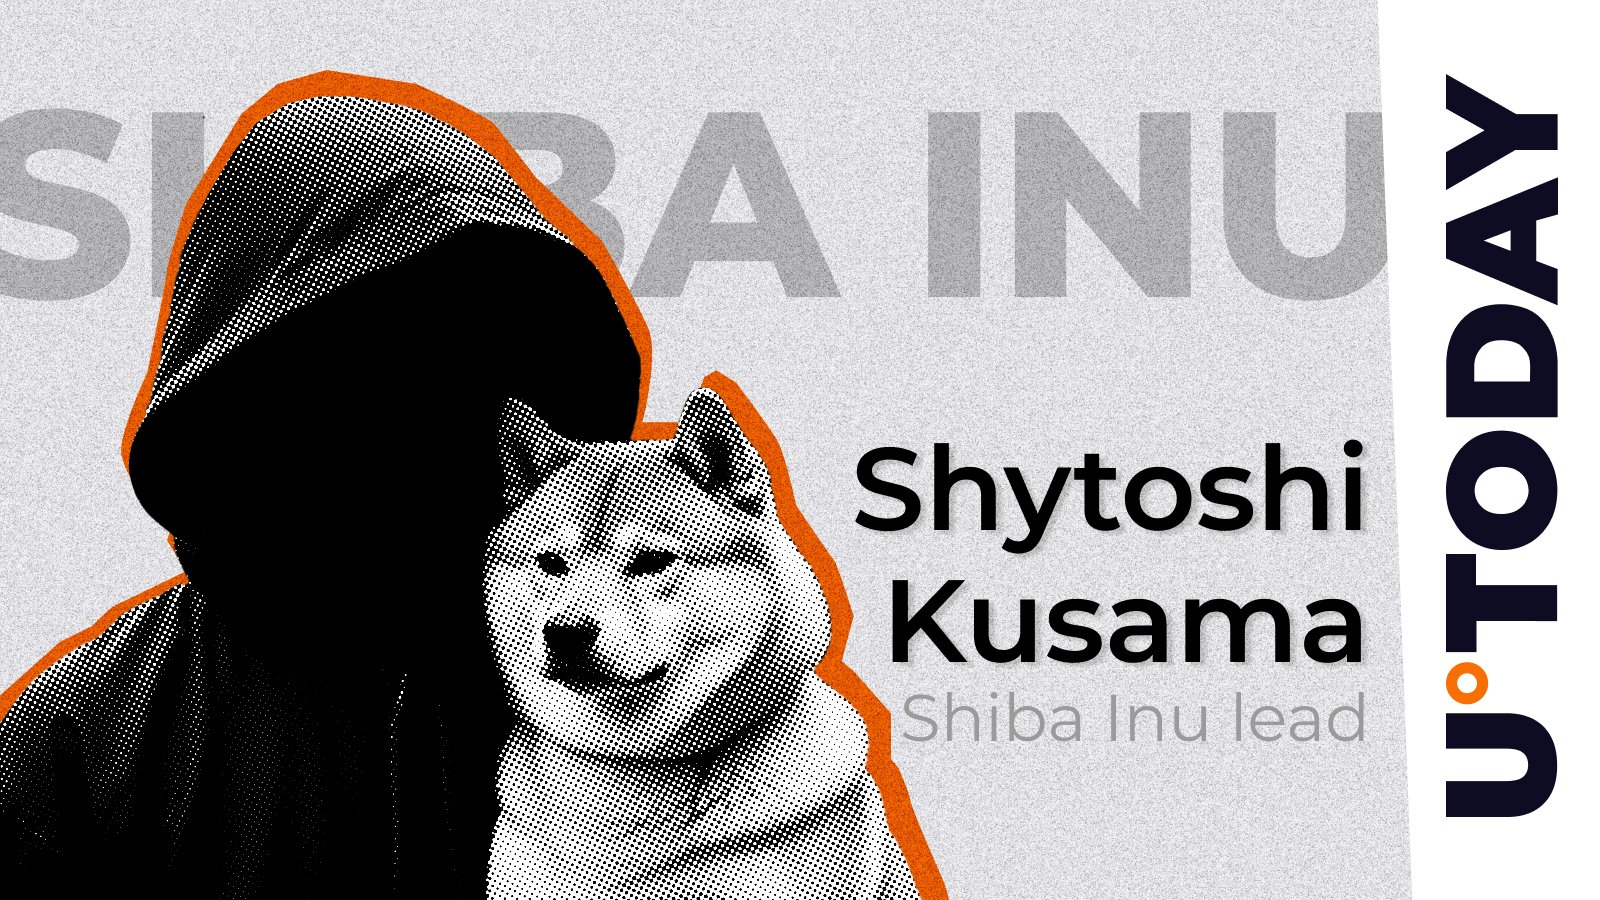 Ryoshi and Shytoshi Kusama’s Crucial Roles Explained by SHIB Team